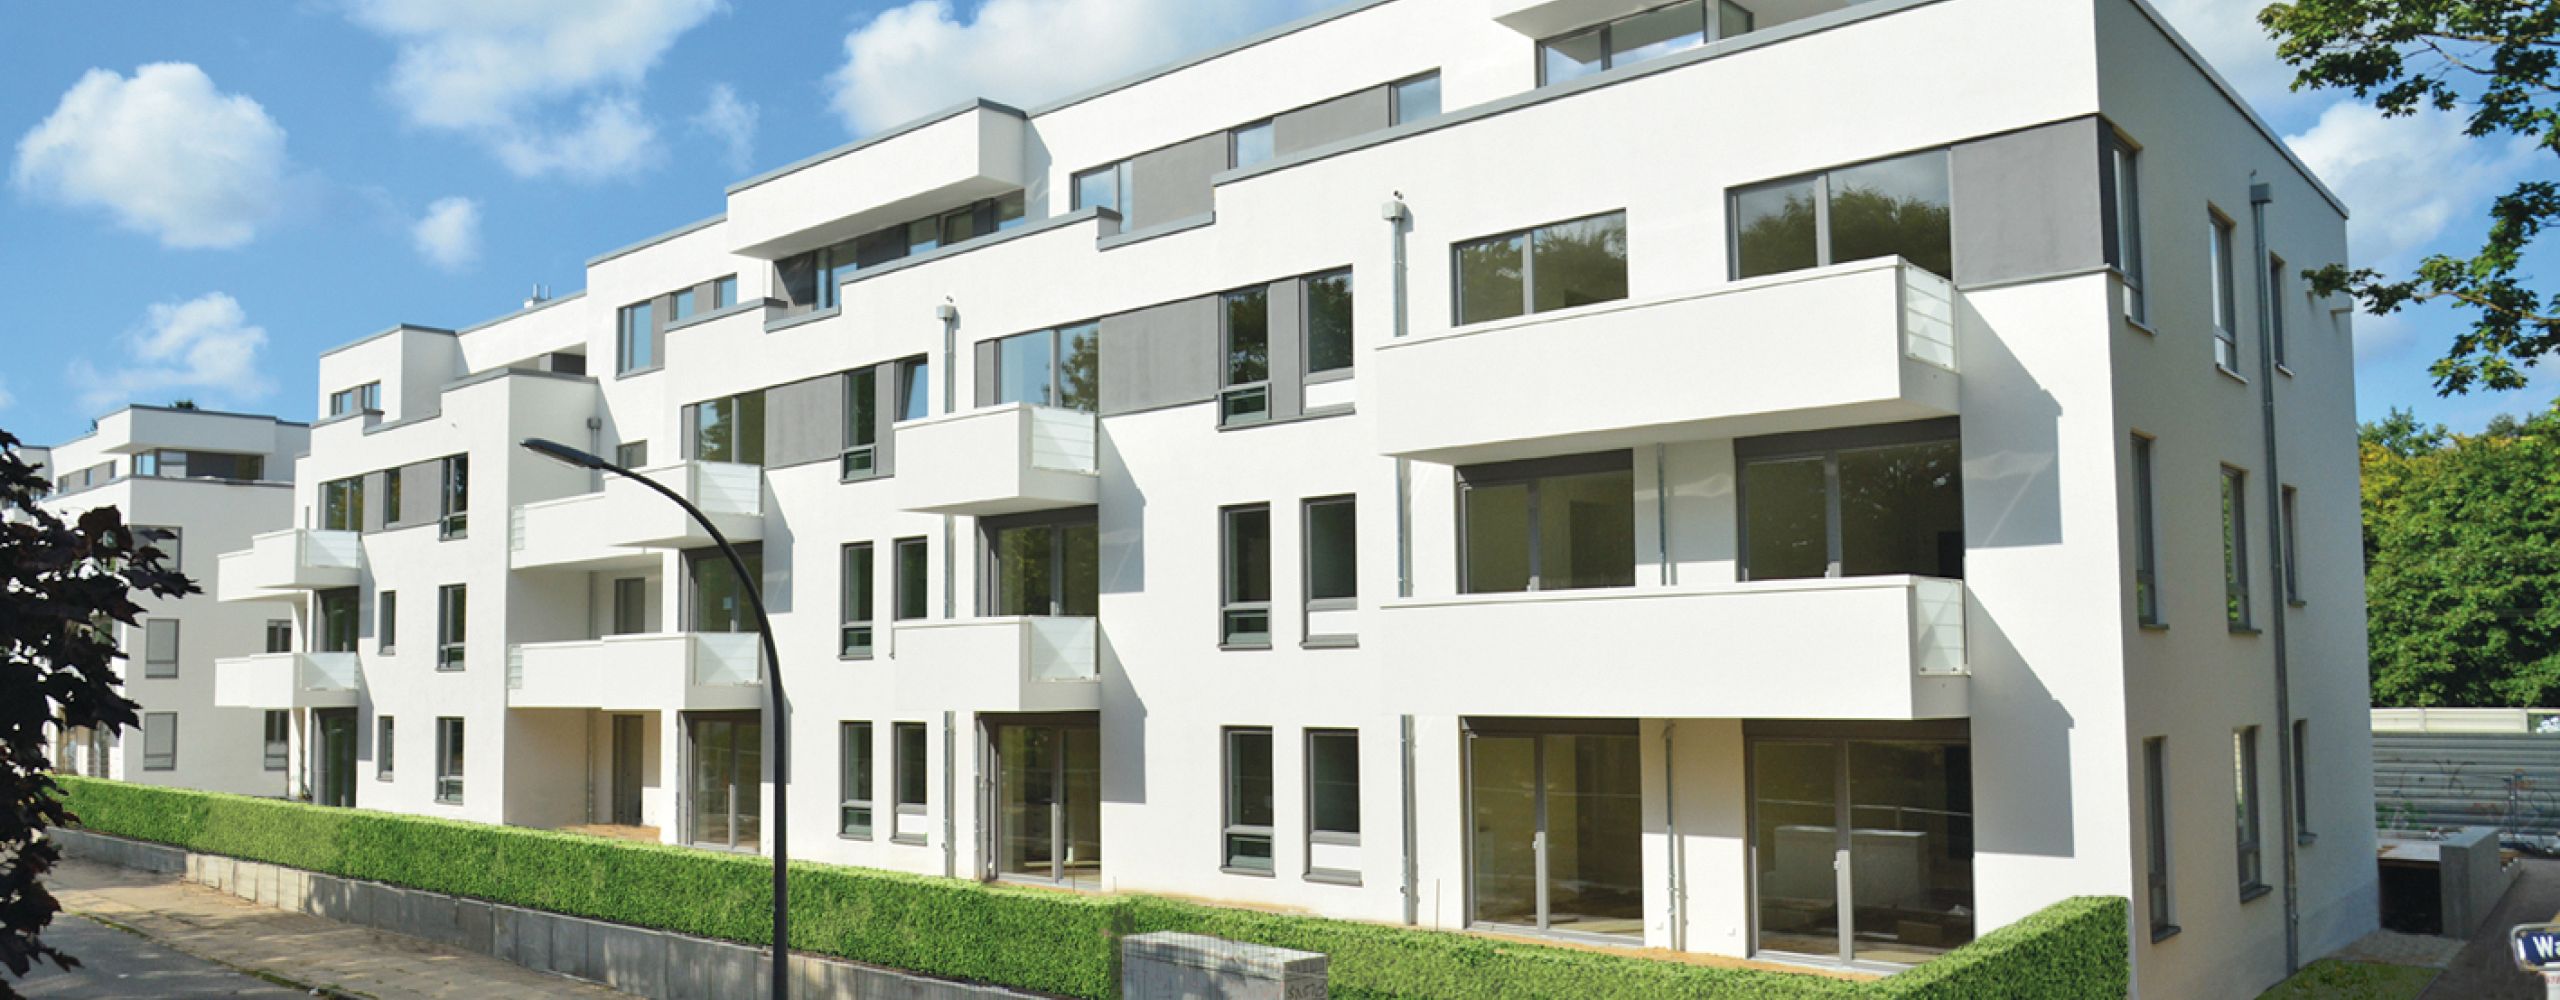 Schlüsselfertig realisierte Wohnungsbau Anlage in Hamburg